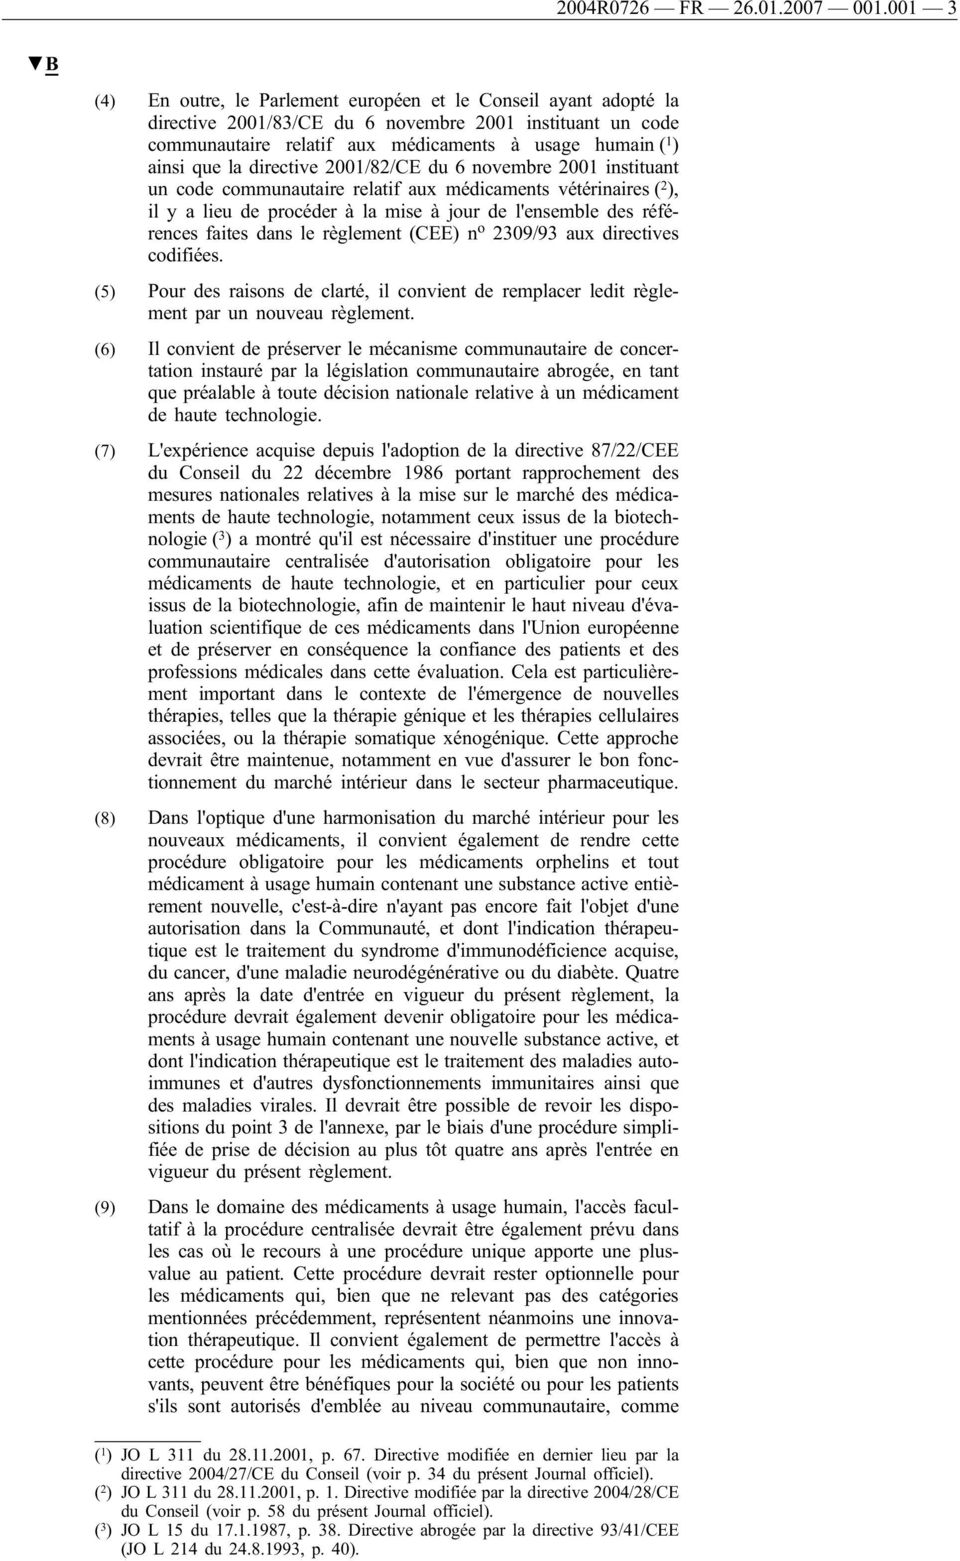 la directive 2001/82/CE du 6 novembre 2001 instituant un code communautaire relatif aux médicaments vétérinaires ( 2 ), il y a lieu de procéder à la mise à jour de l'ensemble des références faites